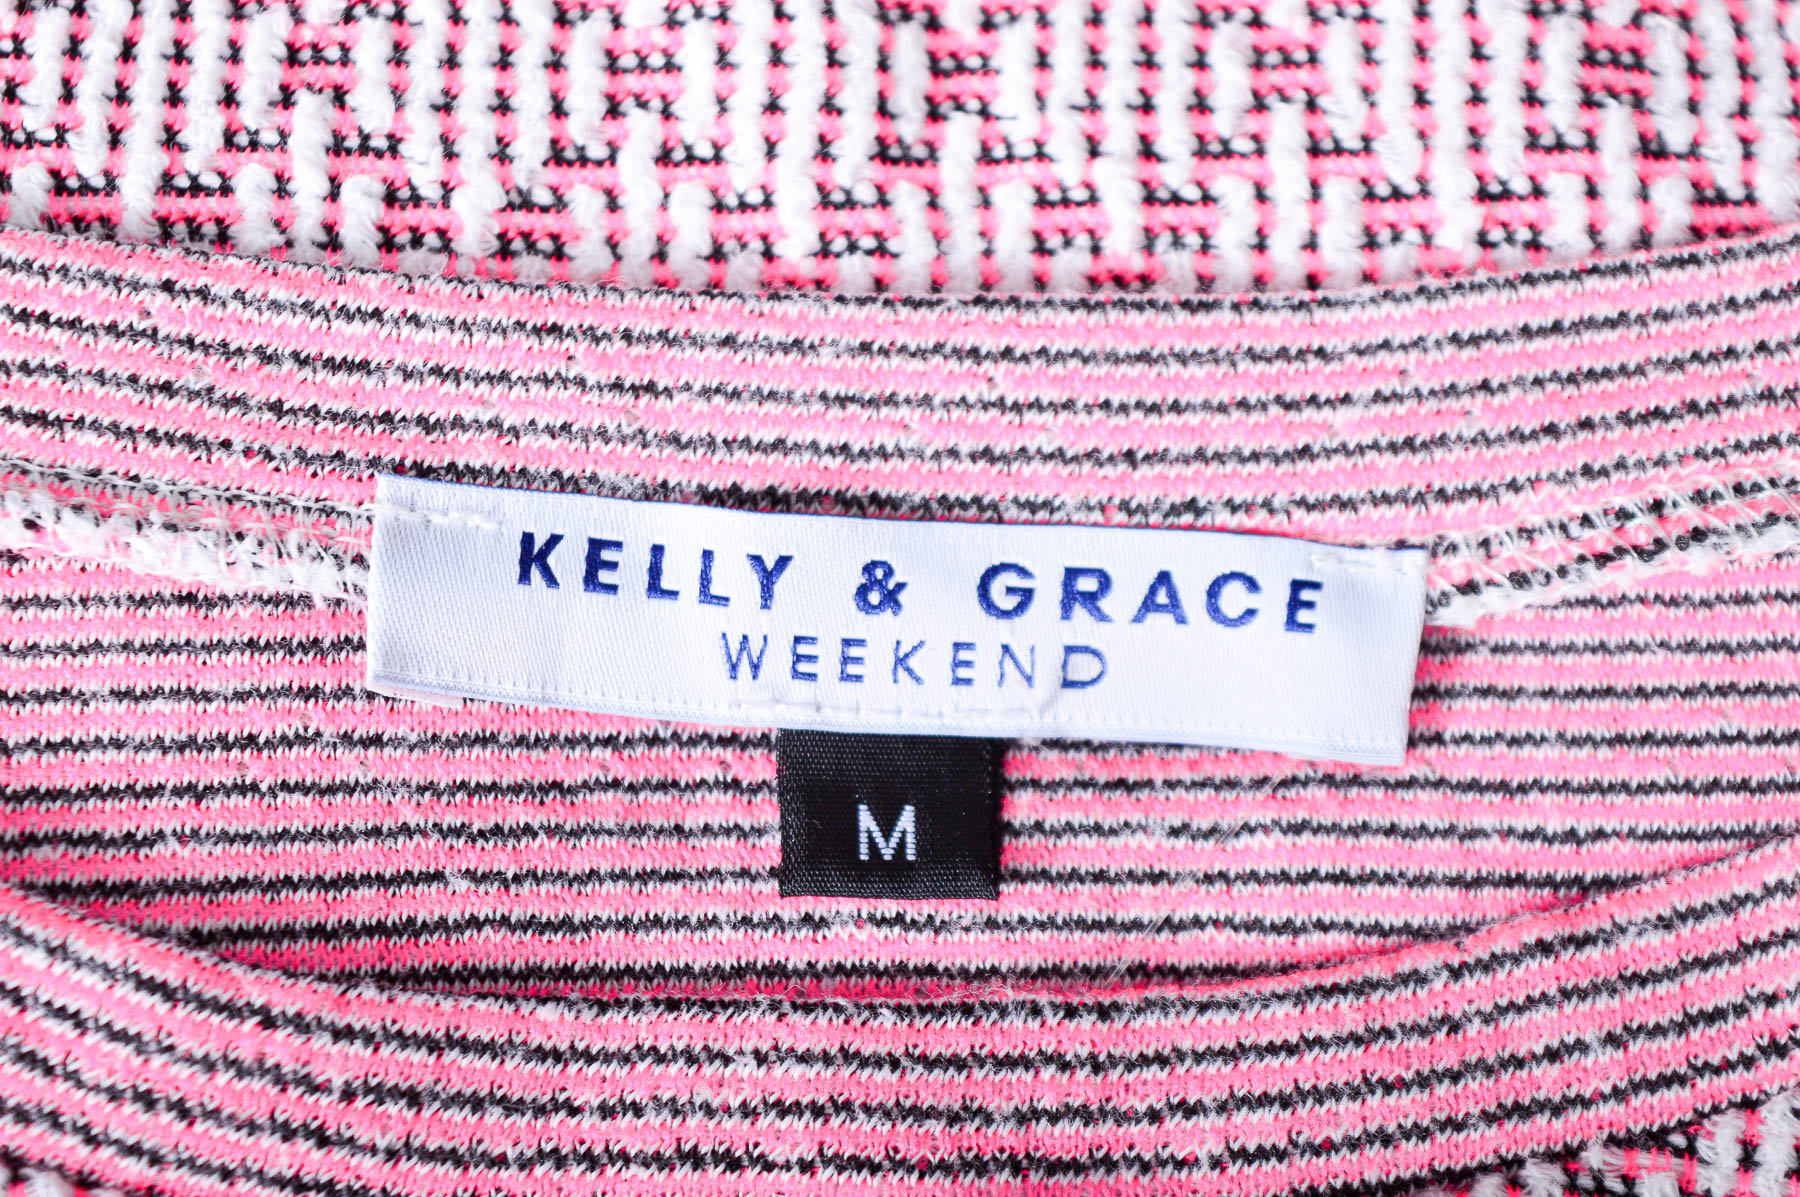 Women's sweater - Kelly & Grace Weekend - 2